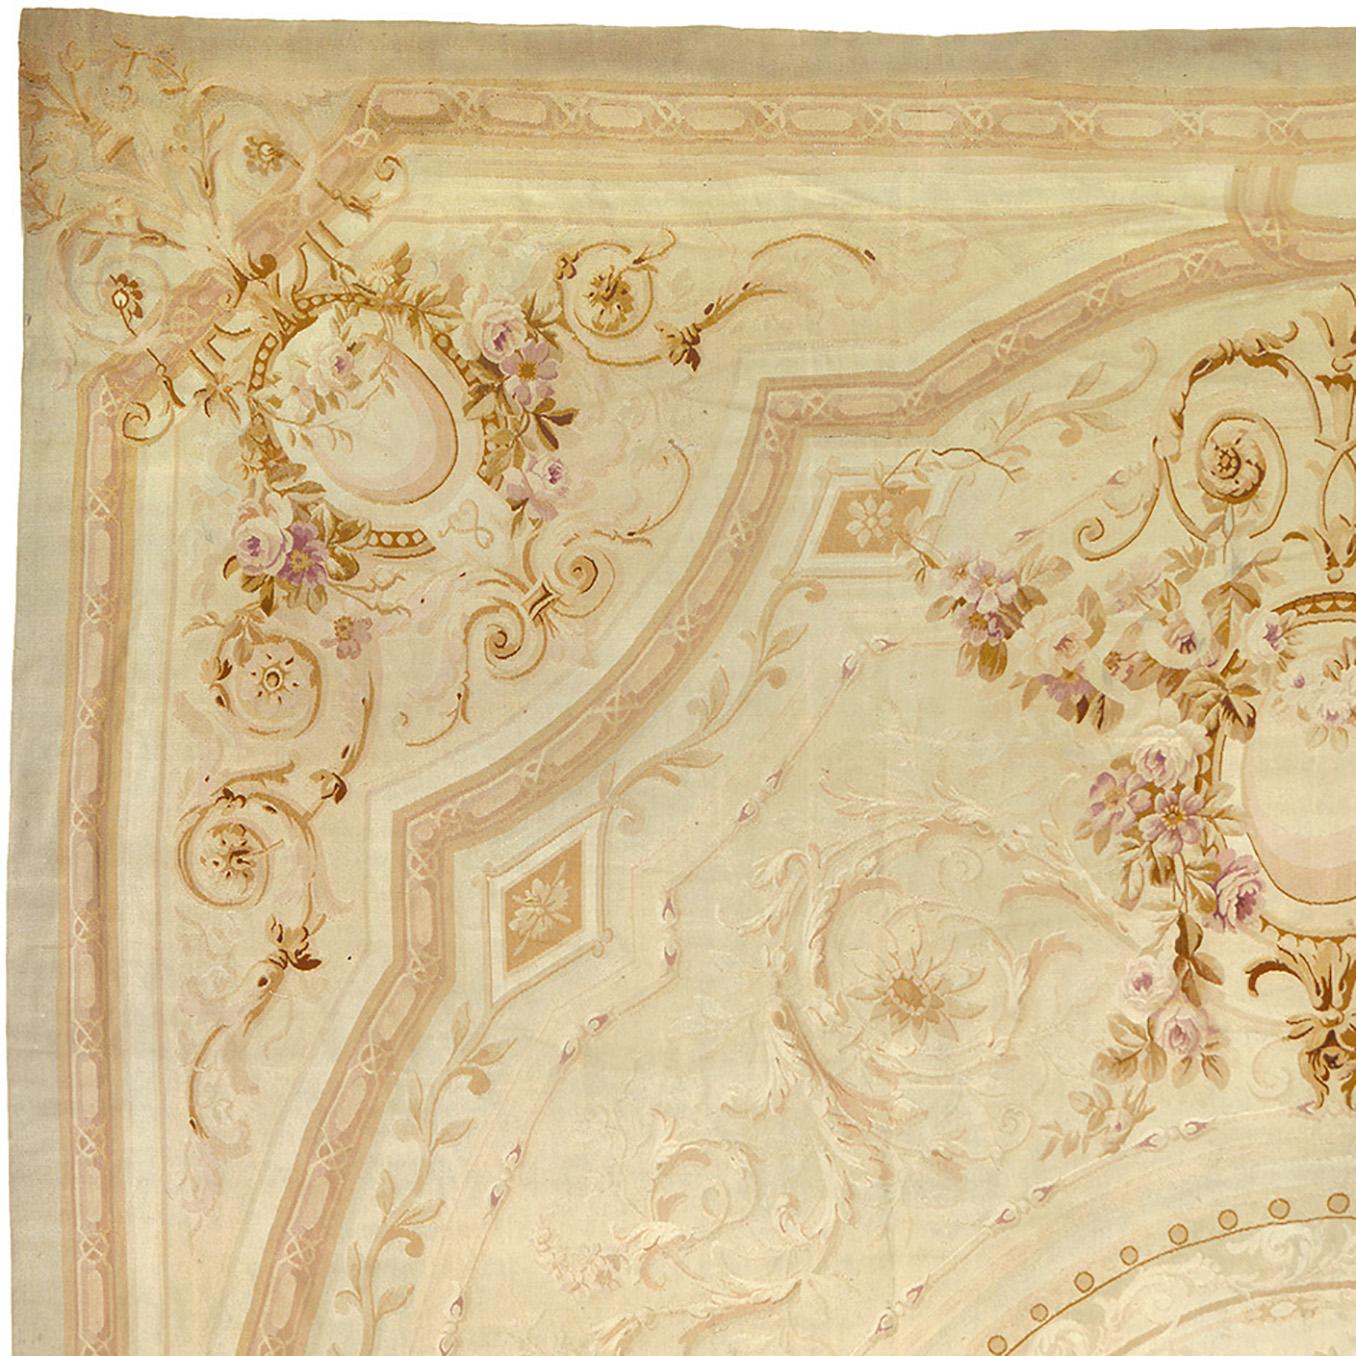 Antiker Aubusson-Teppich
Frankreich, 1870
Beige und rosa Blumenmuster
Dimensionale Grenze

21'4